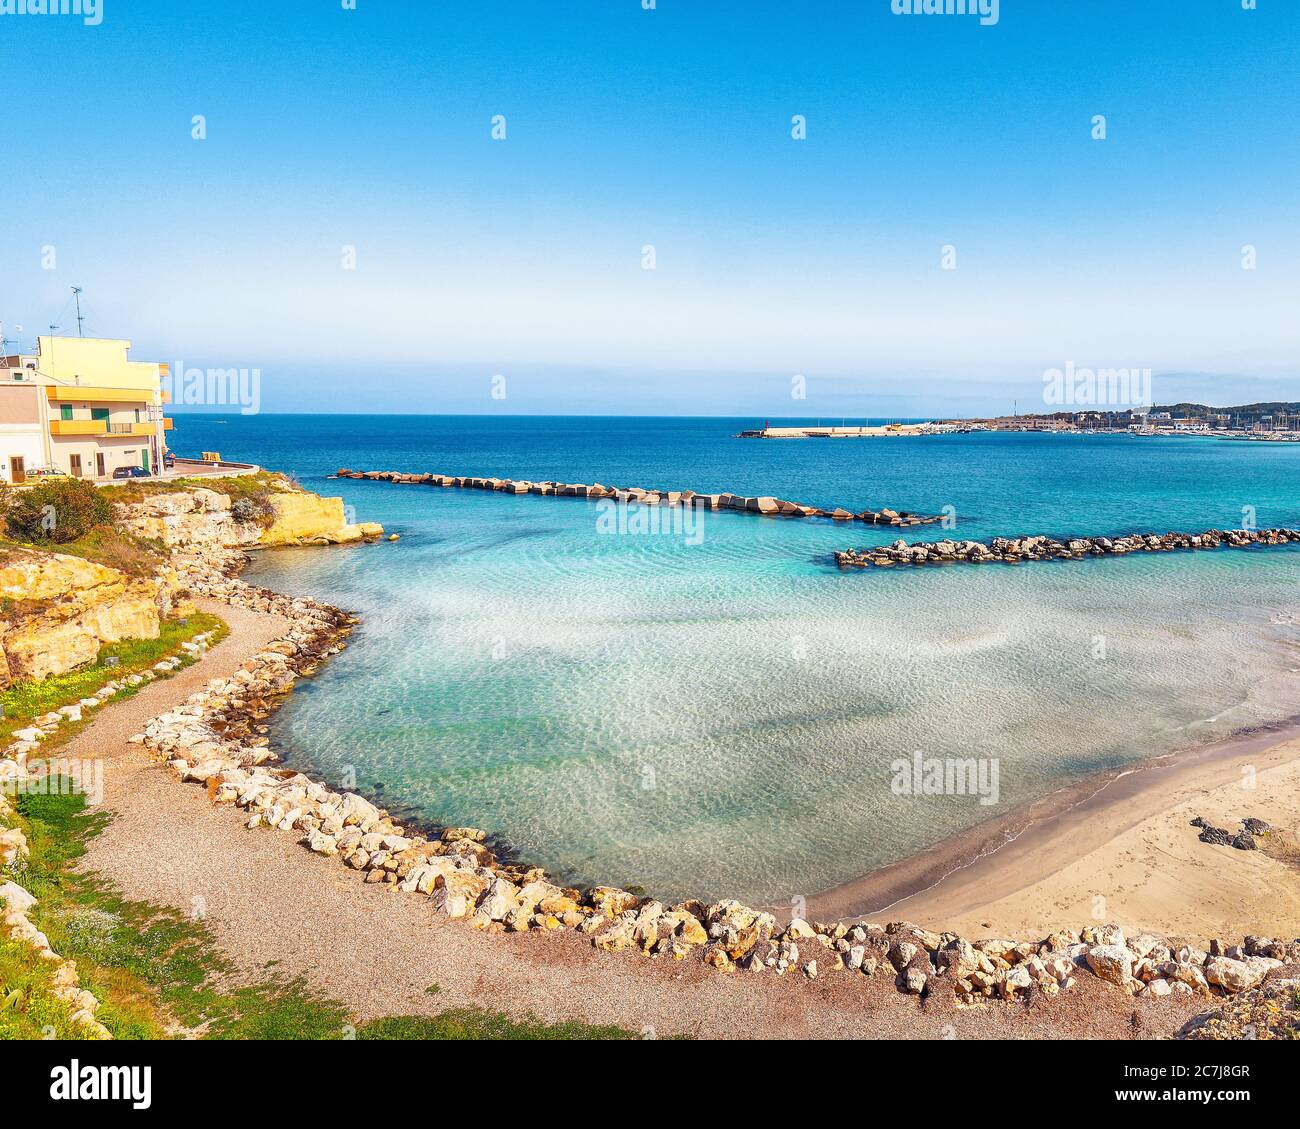 Otranto - ciudad costera en Puglia con mar turquesa. Vacaciones italianas. Ciudad Otranto, provincia de Lecce en la península de Salento, Puglia, Italia Foto de stock